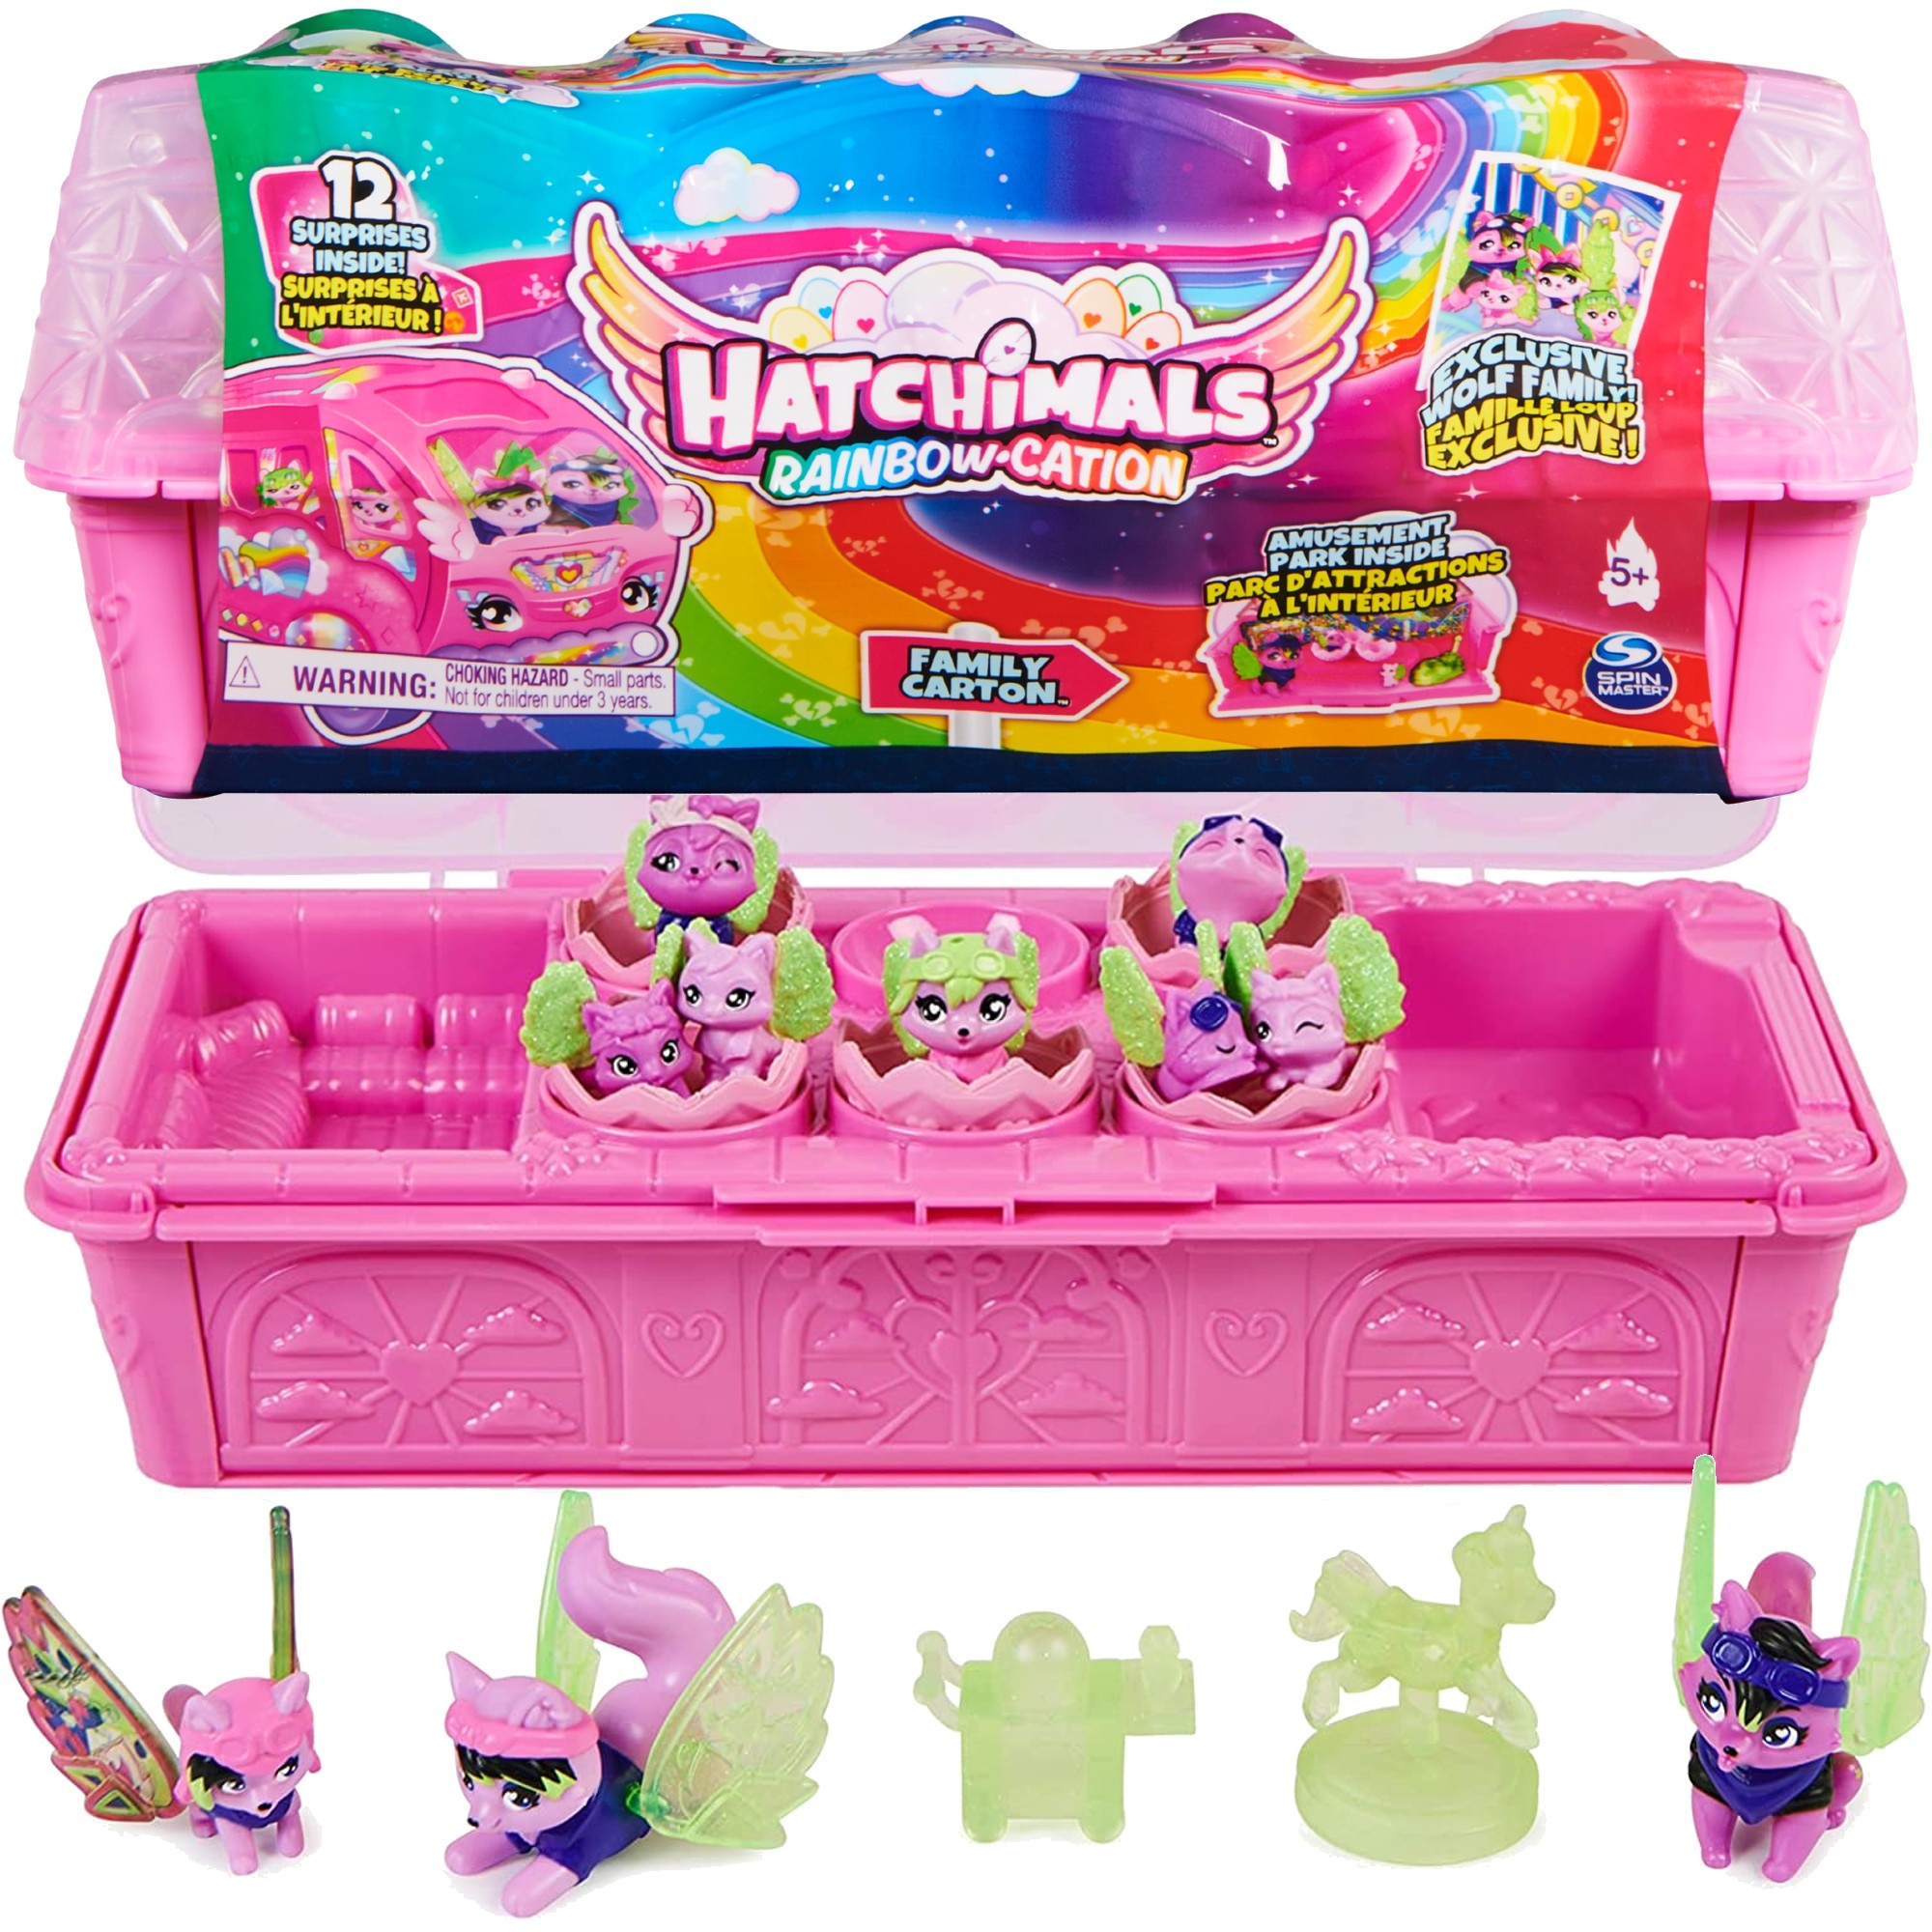 Hatchimals Tczowe Wakacje 12 niespodzianek 6 jaj z figurkami Rainbow Cation Minifigurki